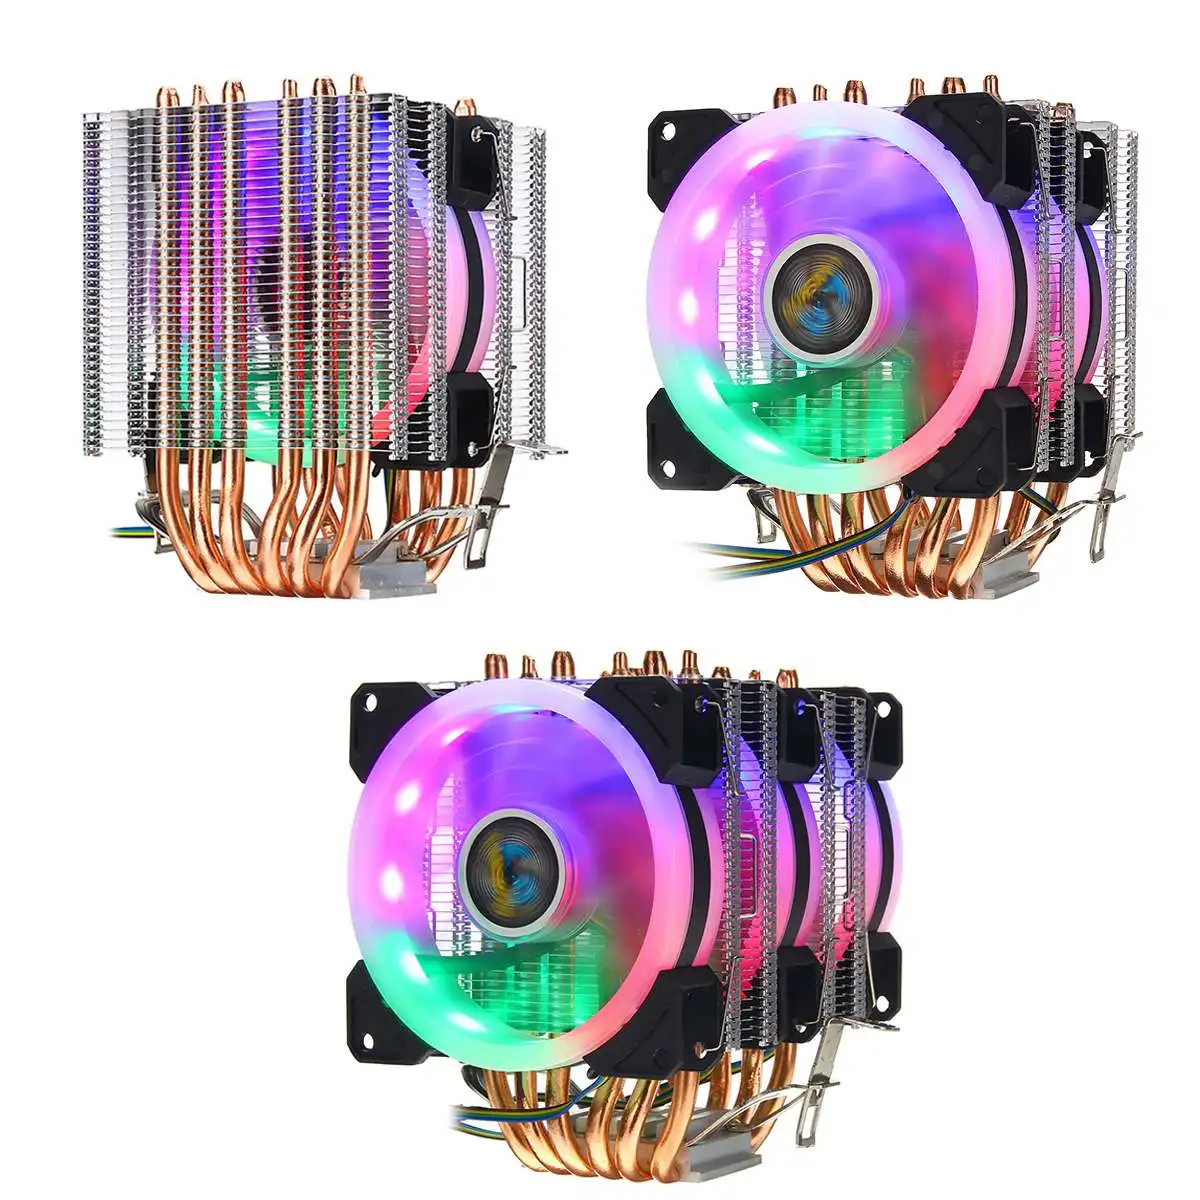 Процессор кулер вентилятор Радиатор охлаждения 6 Медь с тепловым стержнем heat pipe 3/4 Pin коробка передач с Вентилятор Кулер для Intel 775/1150/1151/1155/1156/1366 и AMD все платформы